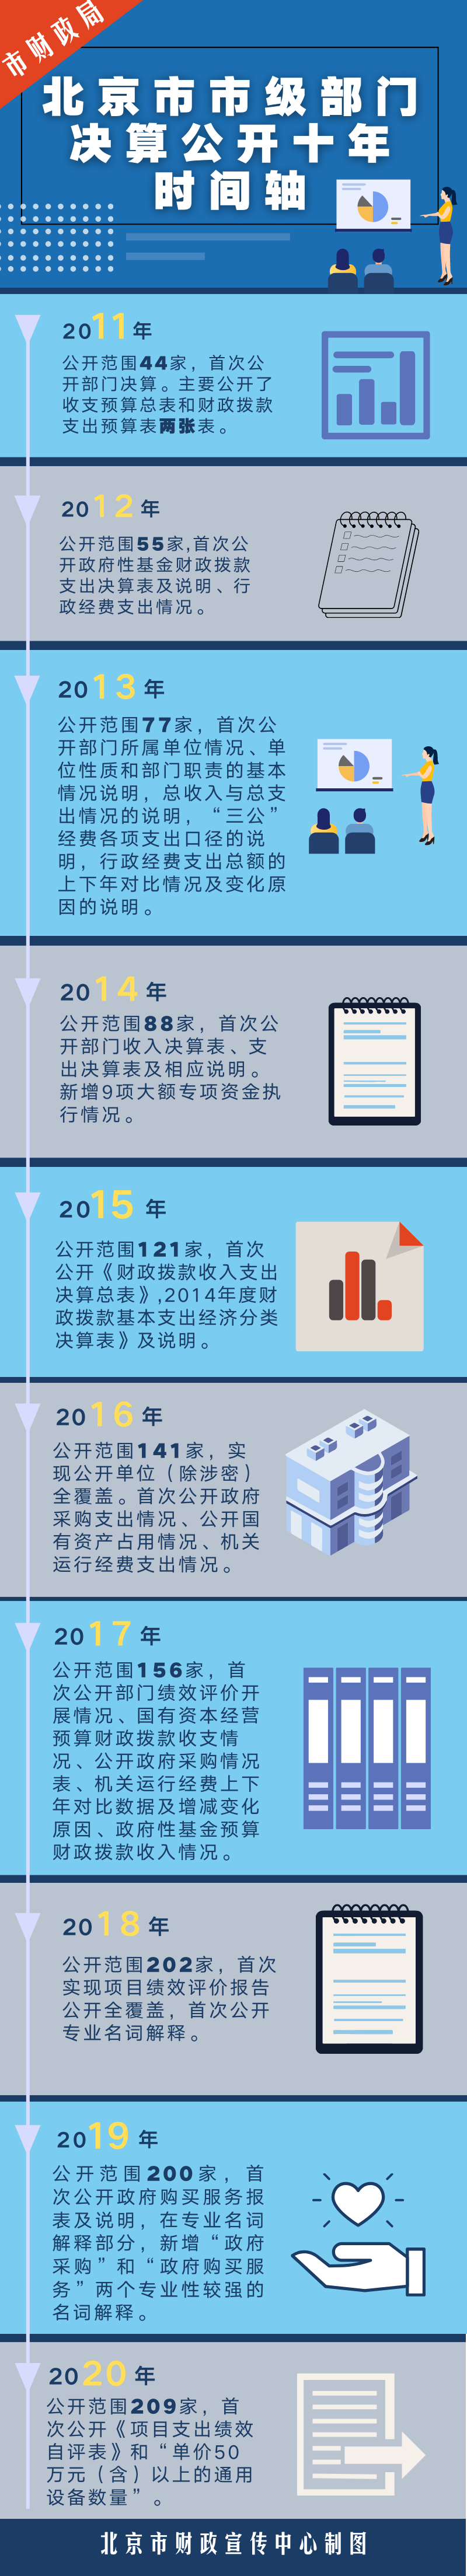 一图看懂：北京市市级部门决算公开十年时间轴